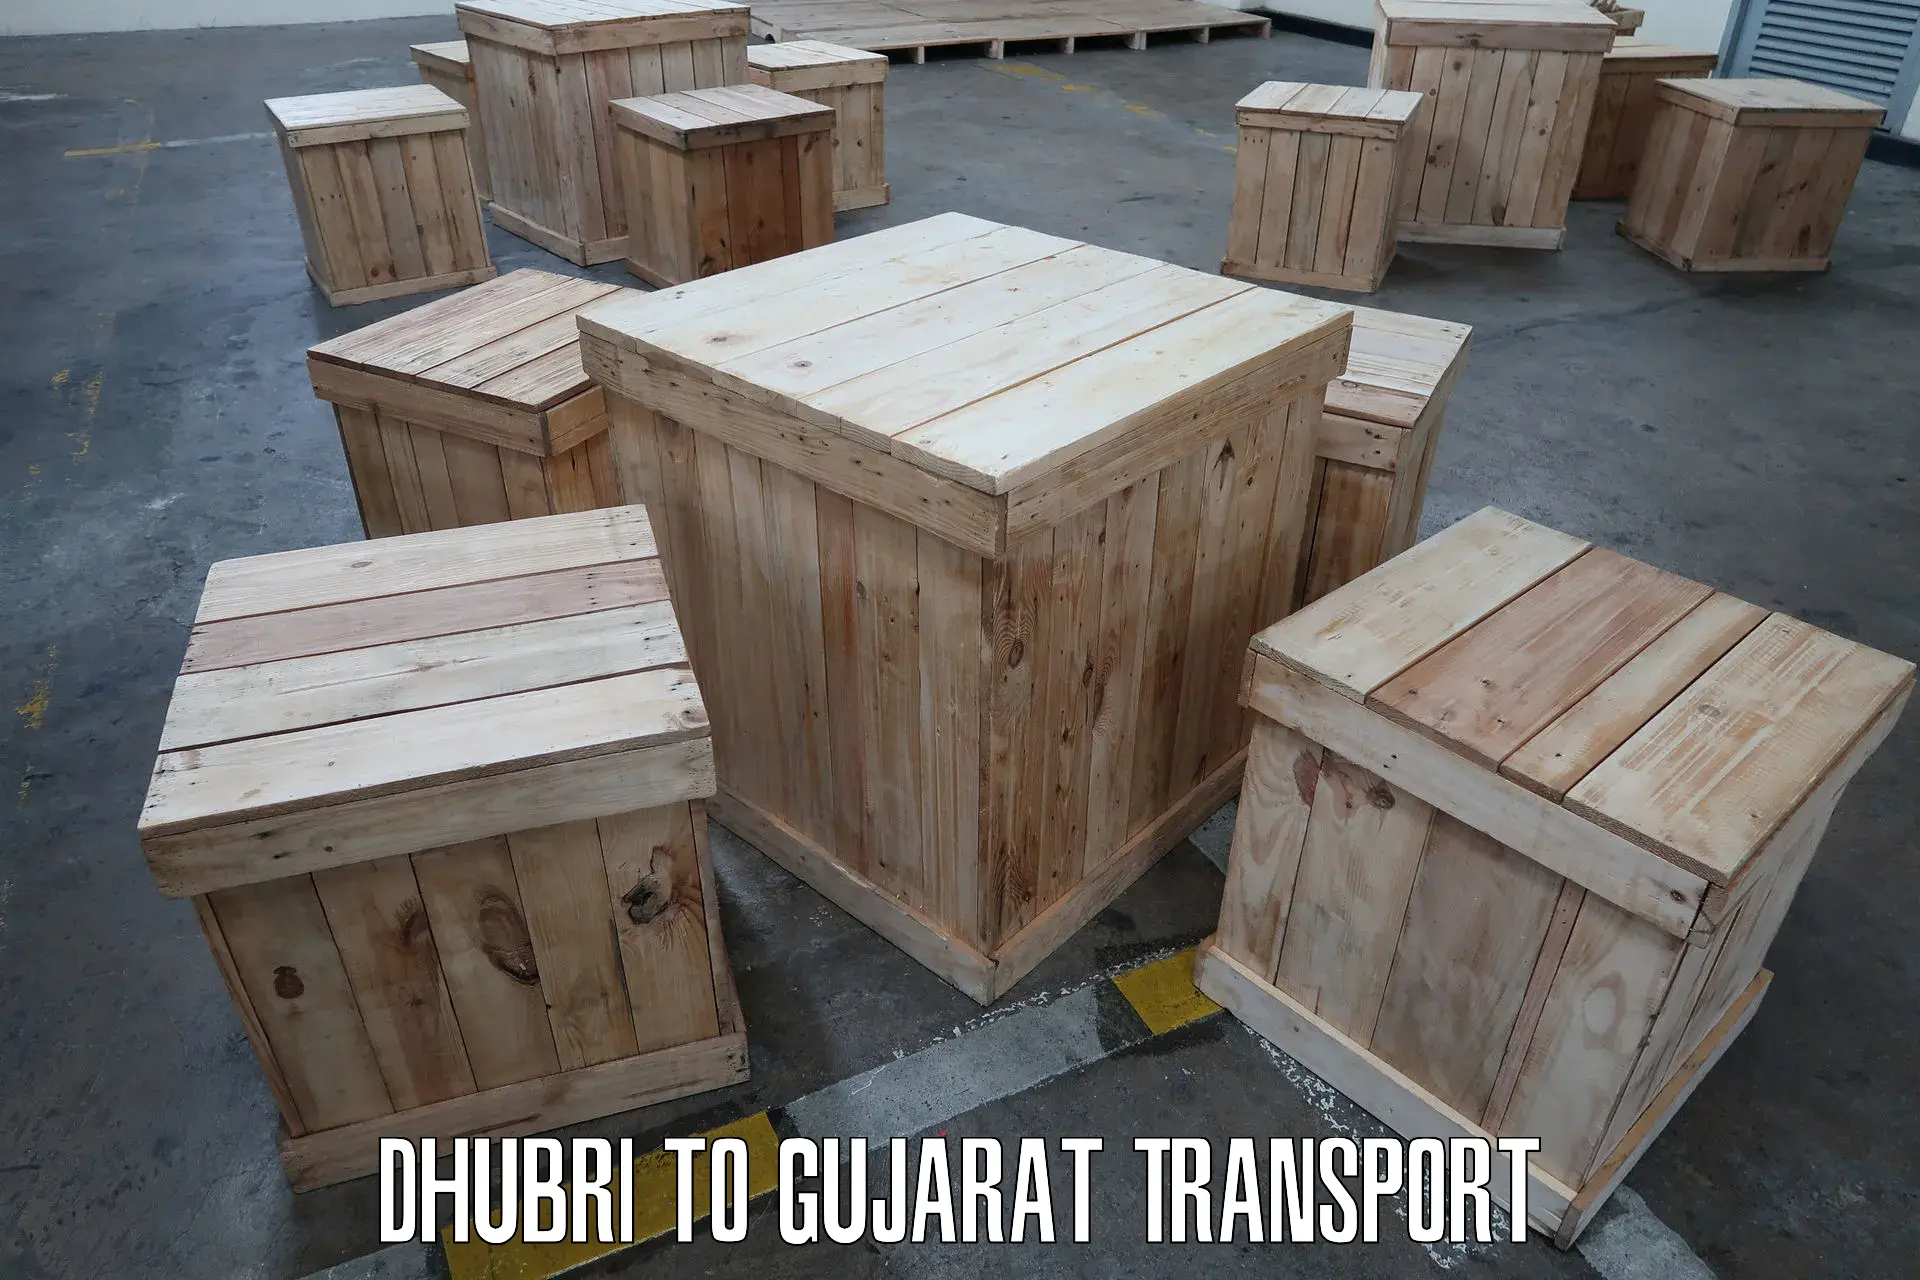 Express transport services Dhubri to Patan Gujarat